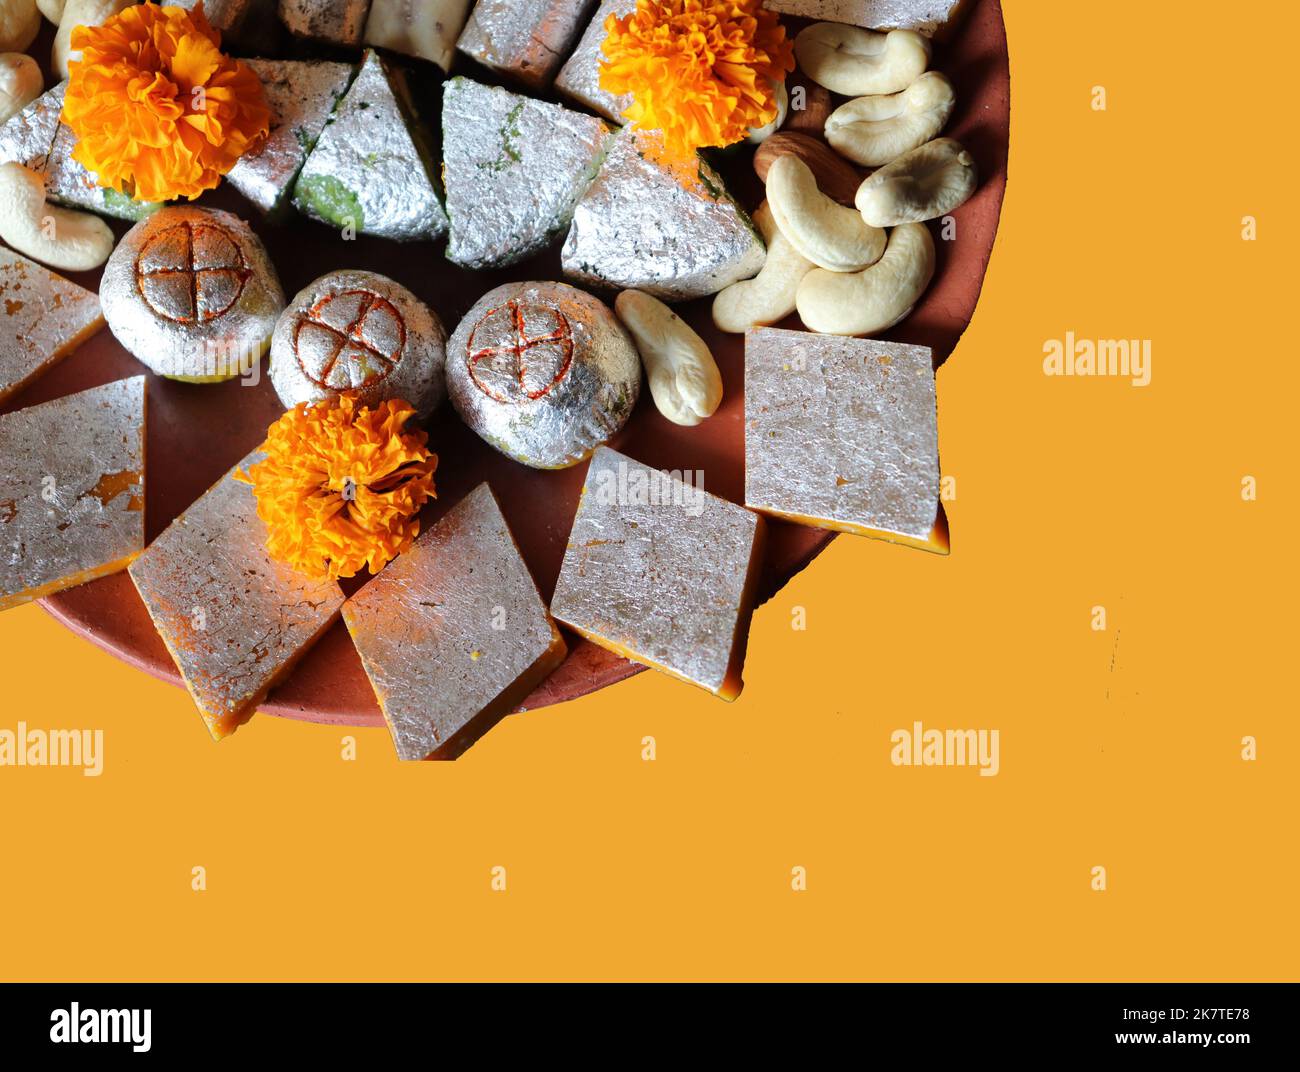 Assortiment de bonbons indiens/fruits secs/fleurs marigold dans une assiette en terre cuite/argile sur fond jaune/festival Diwali/Deepavali Banque D'Images